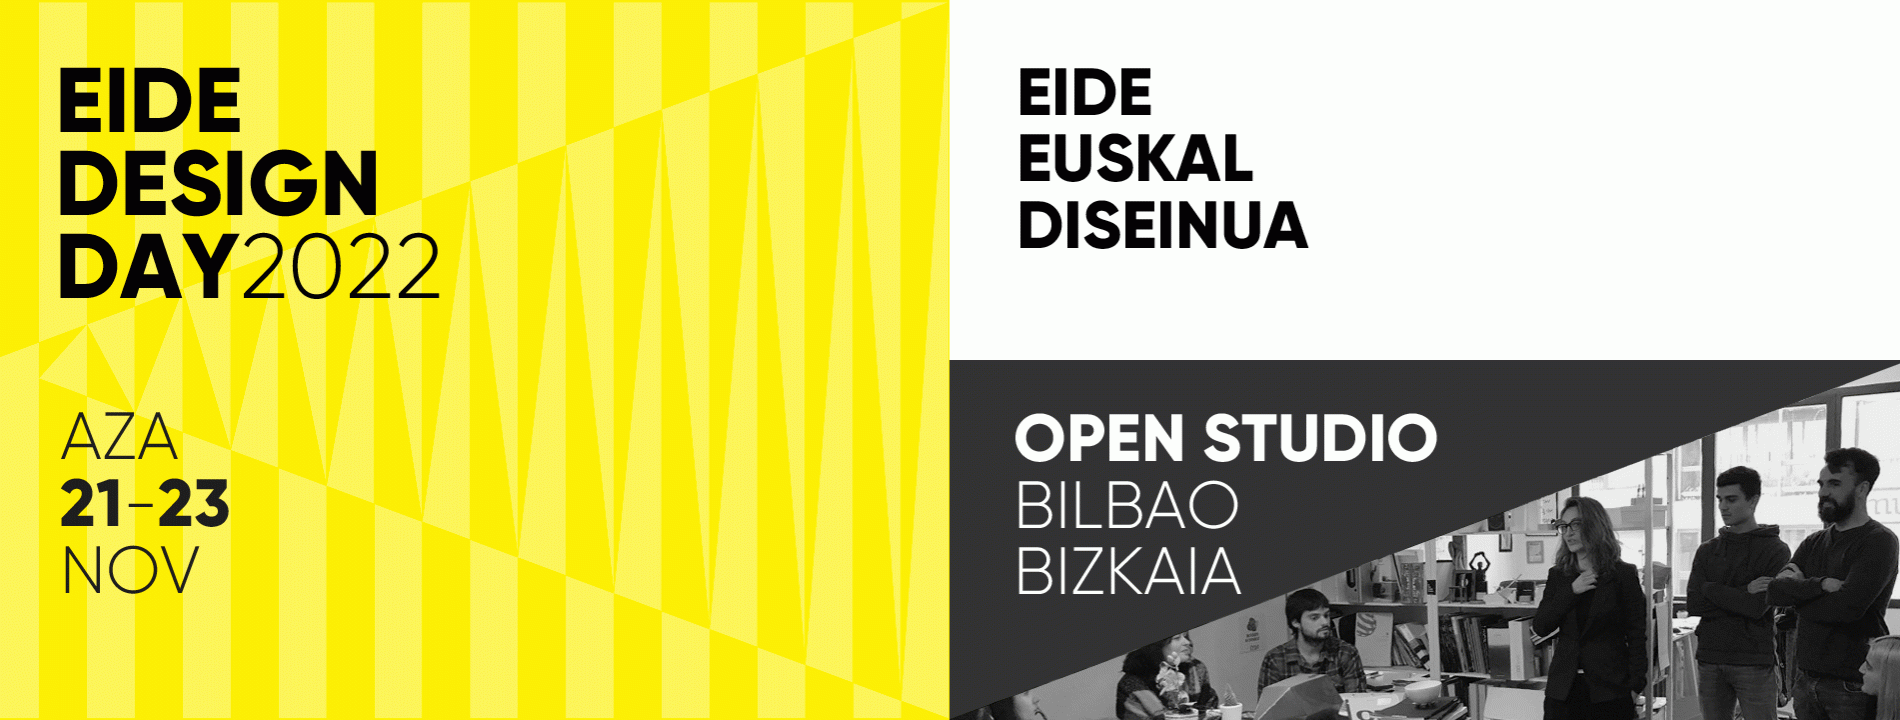 Open Studio Bilbao Bizkaia